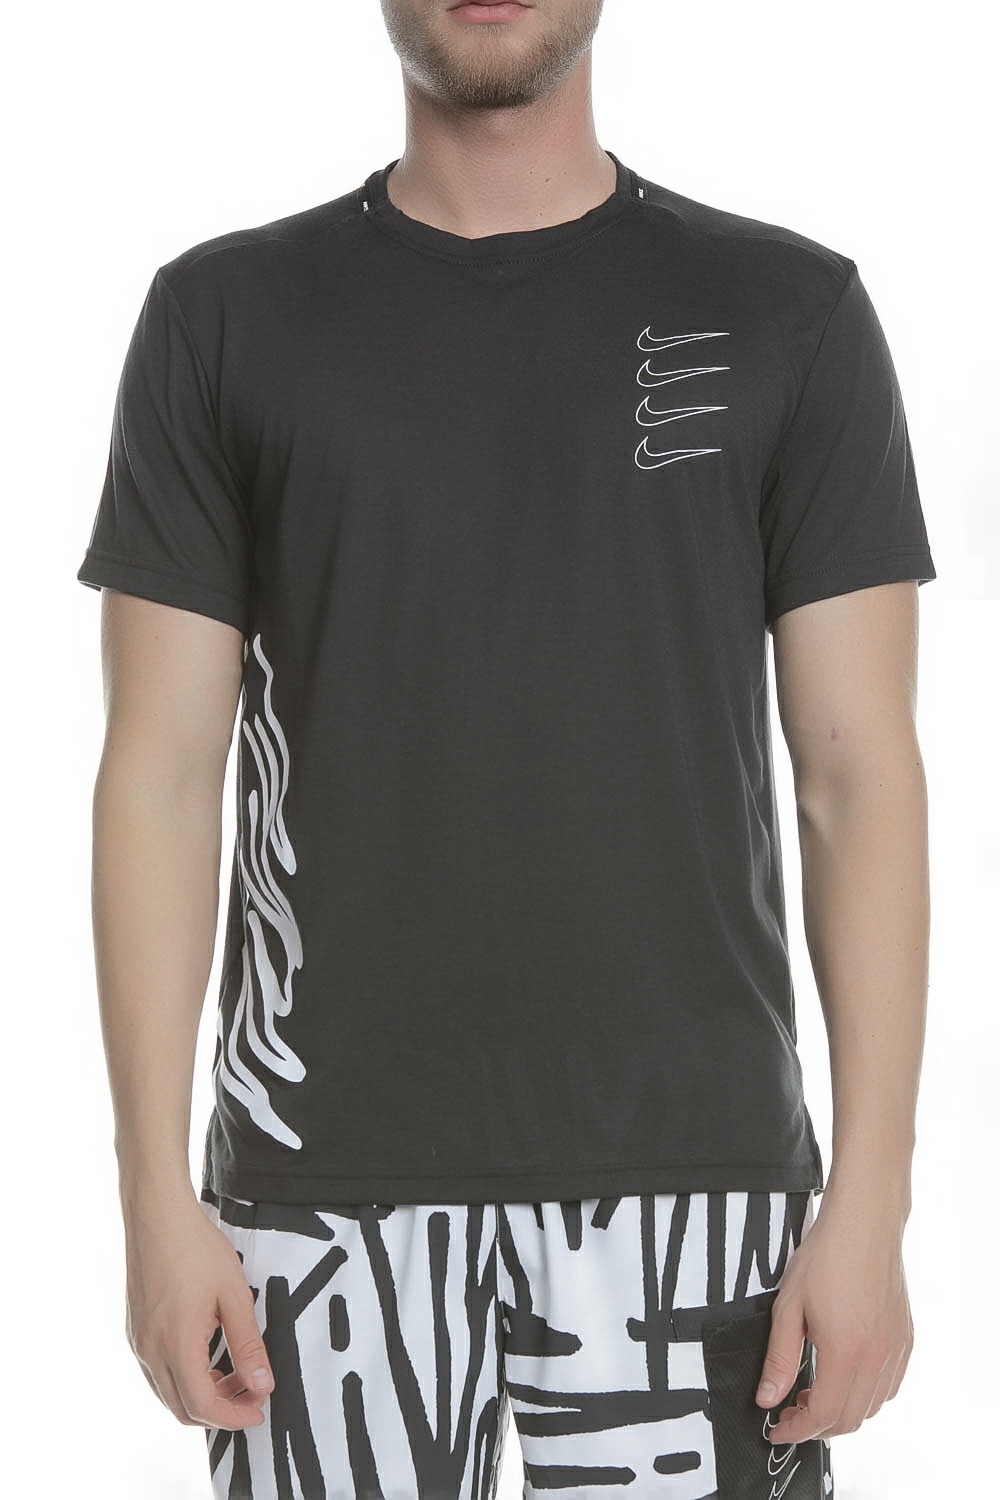 Ανδρικά/Ρούχα/Αθλητικά/T-shirt NIKE - Ανδρική κοντομάνικη μπλούζα προπόνησης NIKE μαύρη